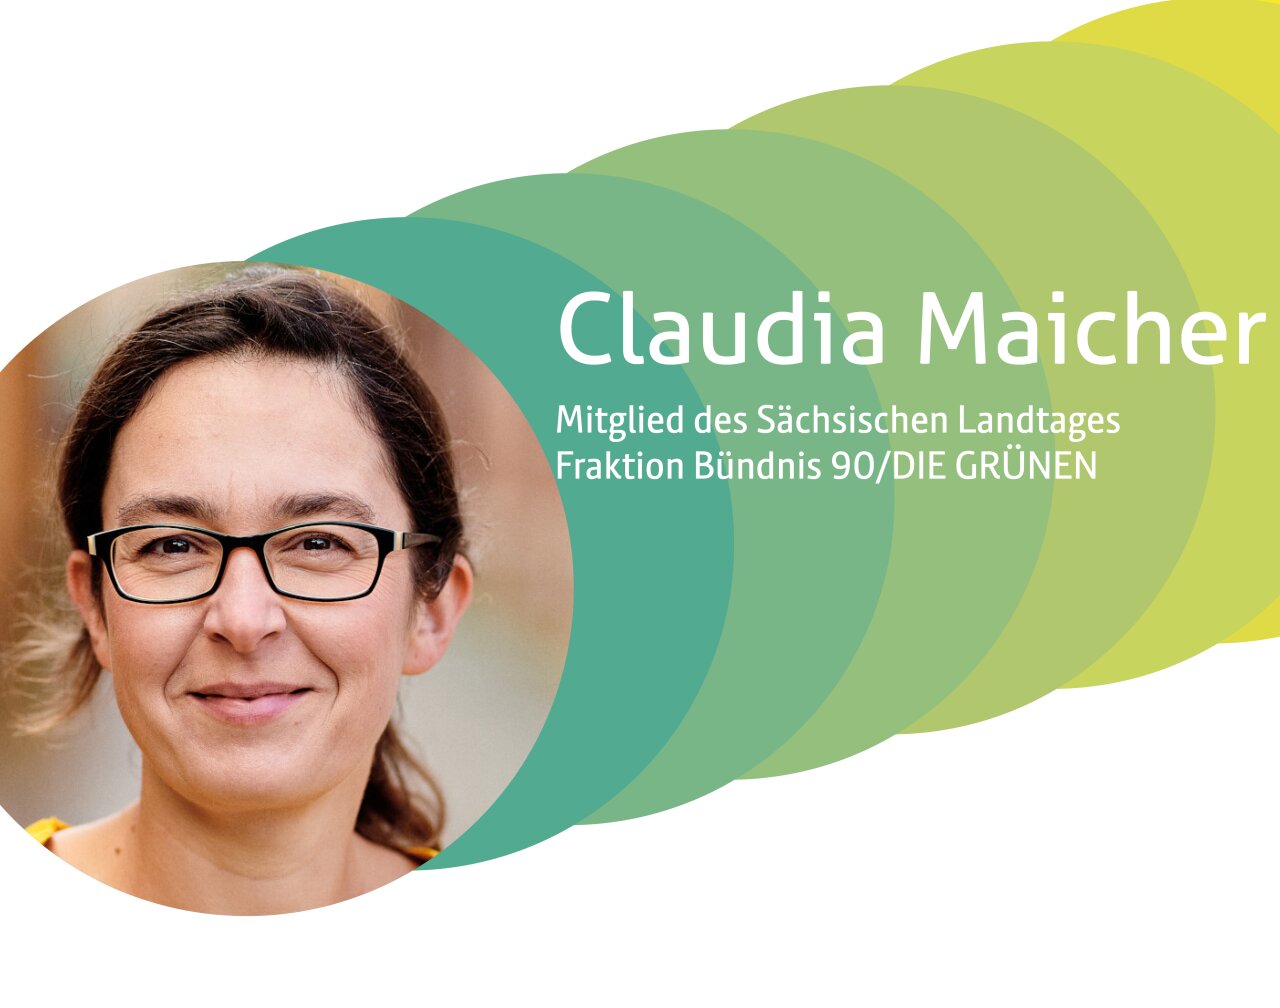 Claudia Maicher, Mitglied des Sächsischen Landtags - Fraktion Bündnis90/DIE GRÜNEN.